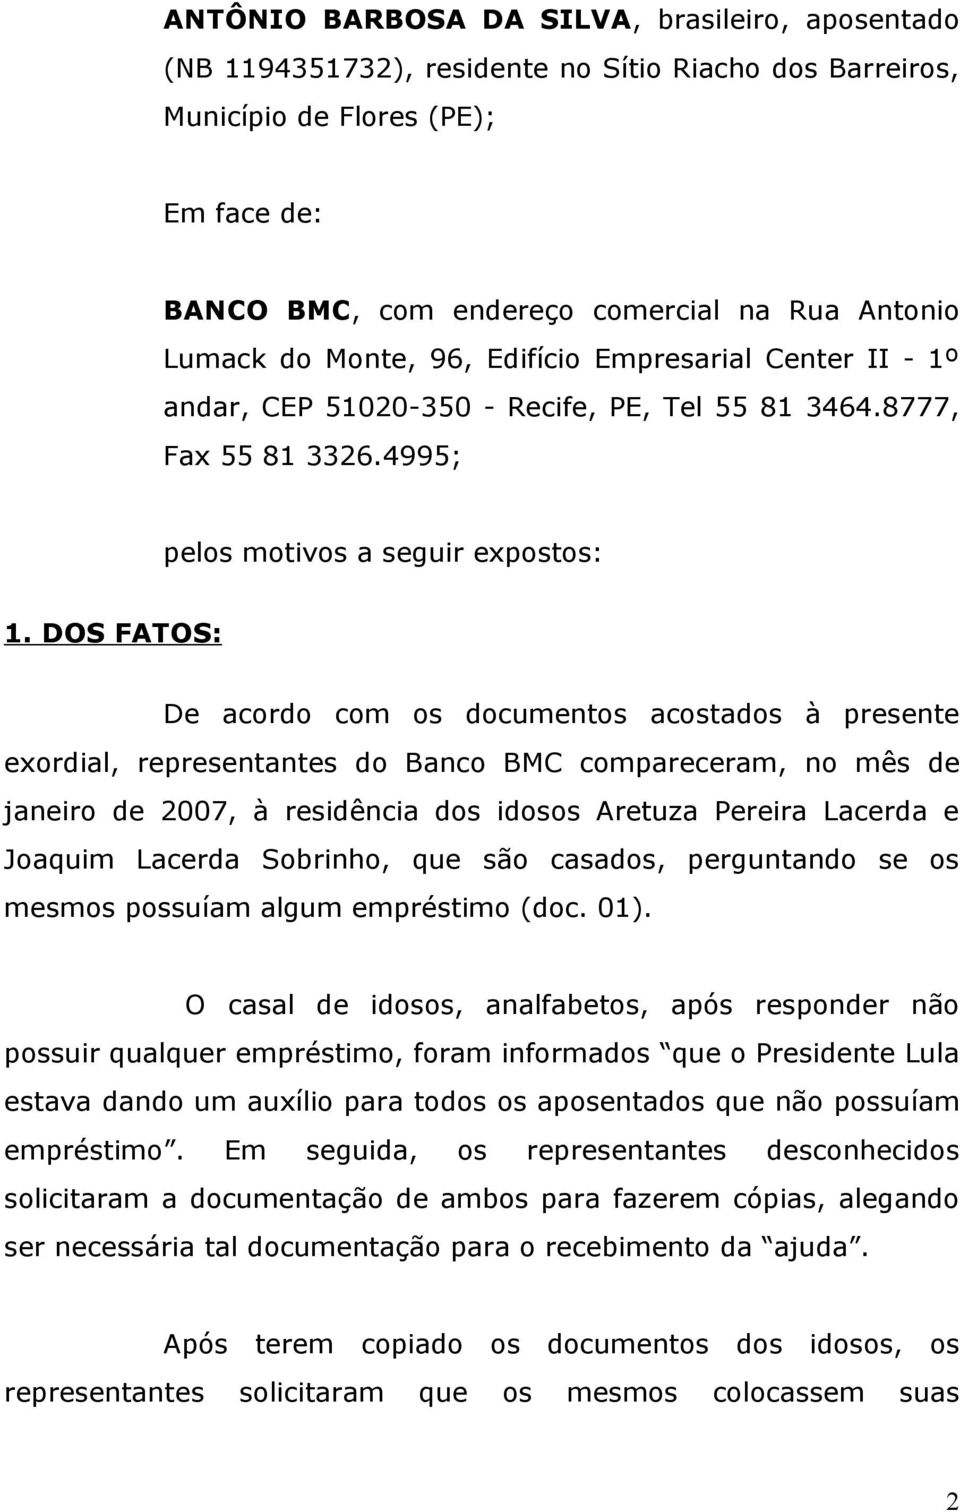 DOS FATOS: De acordo com os documentos acostados à presente exordial, representantes do Banco BMC compareceram, no mês de janeiro de 2007, à residência dos idosos Aretuza Pereira Lacerda e Joaquim